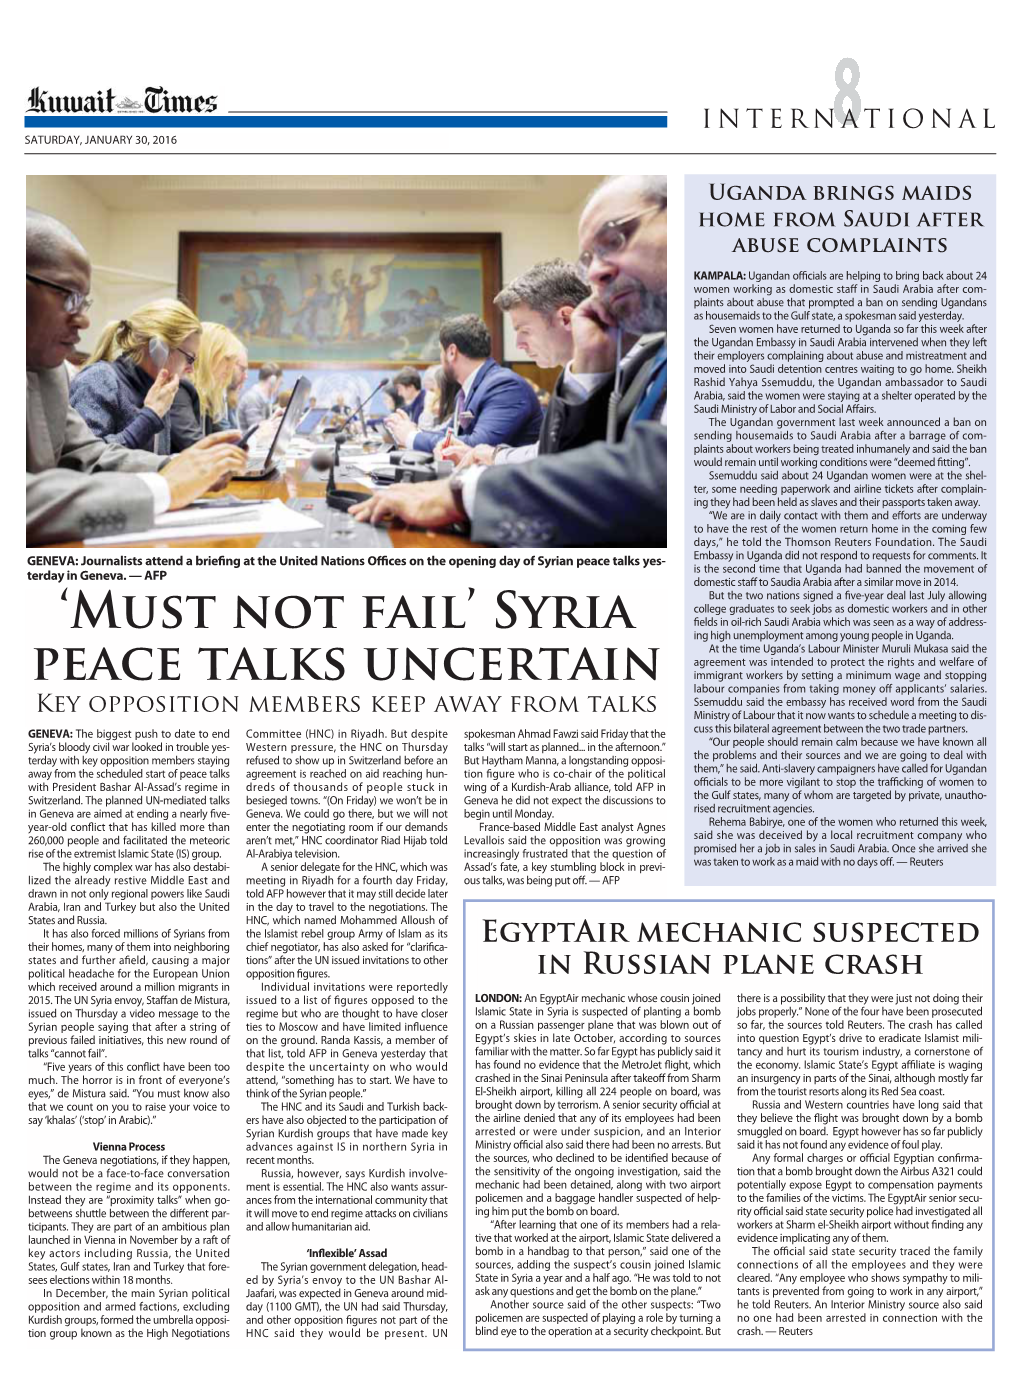 SYRIA PEACE Talks UNCERTAIN